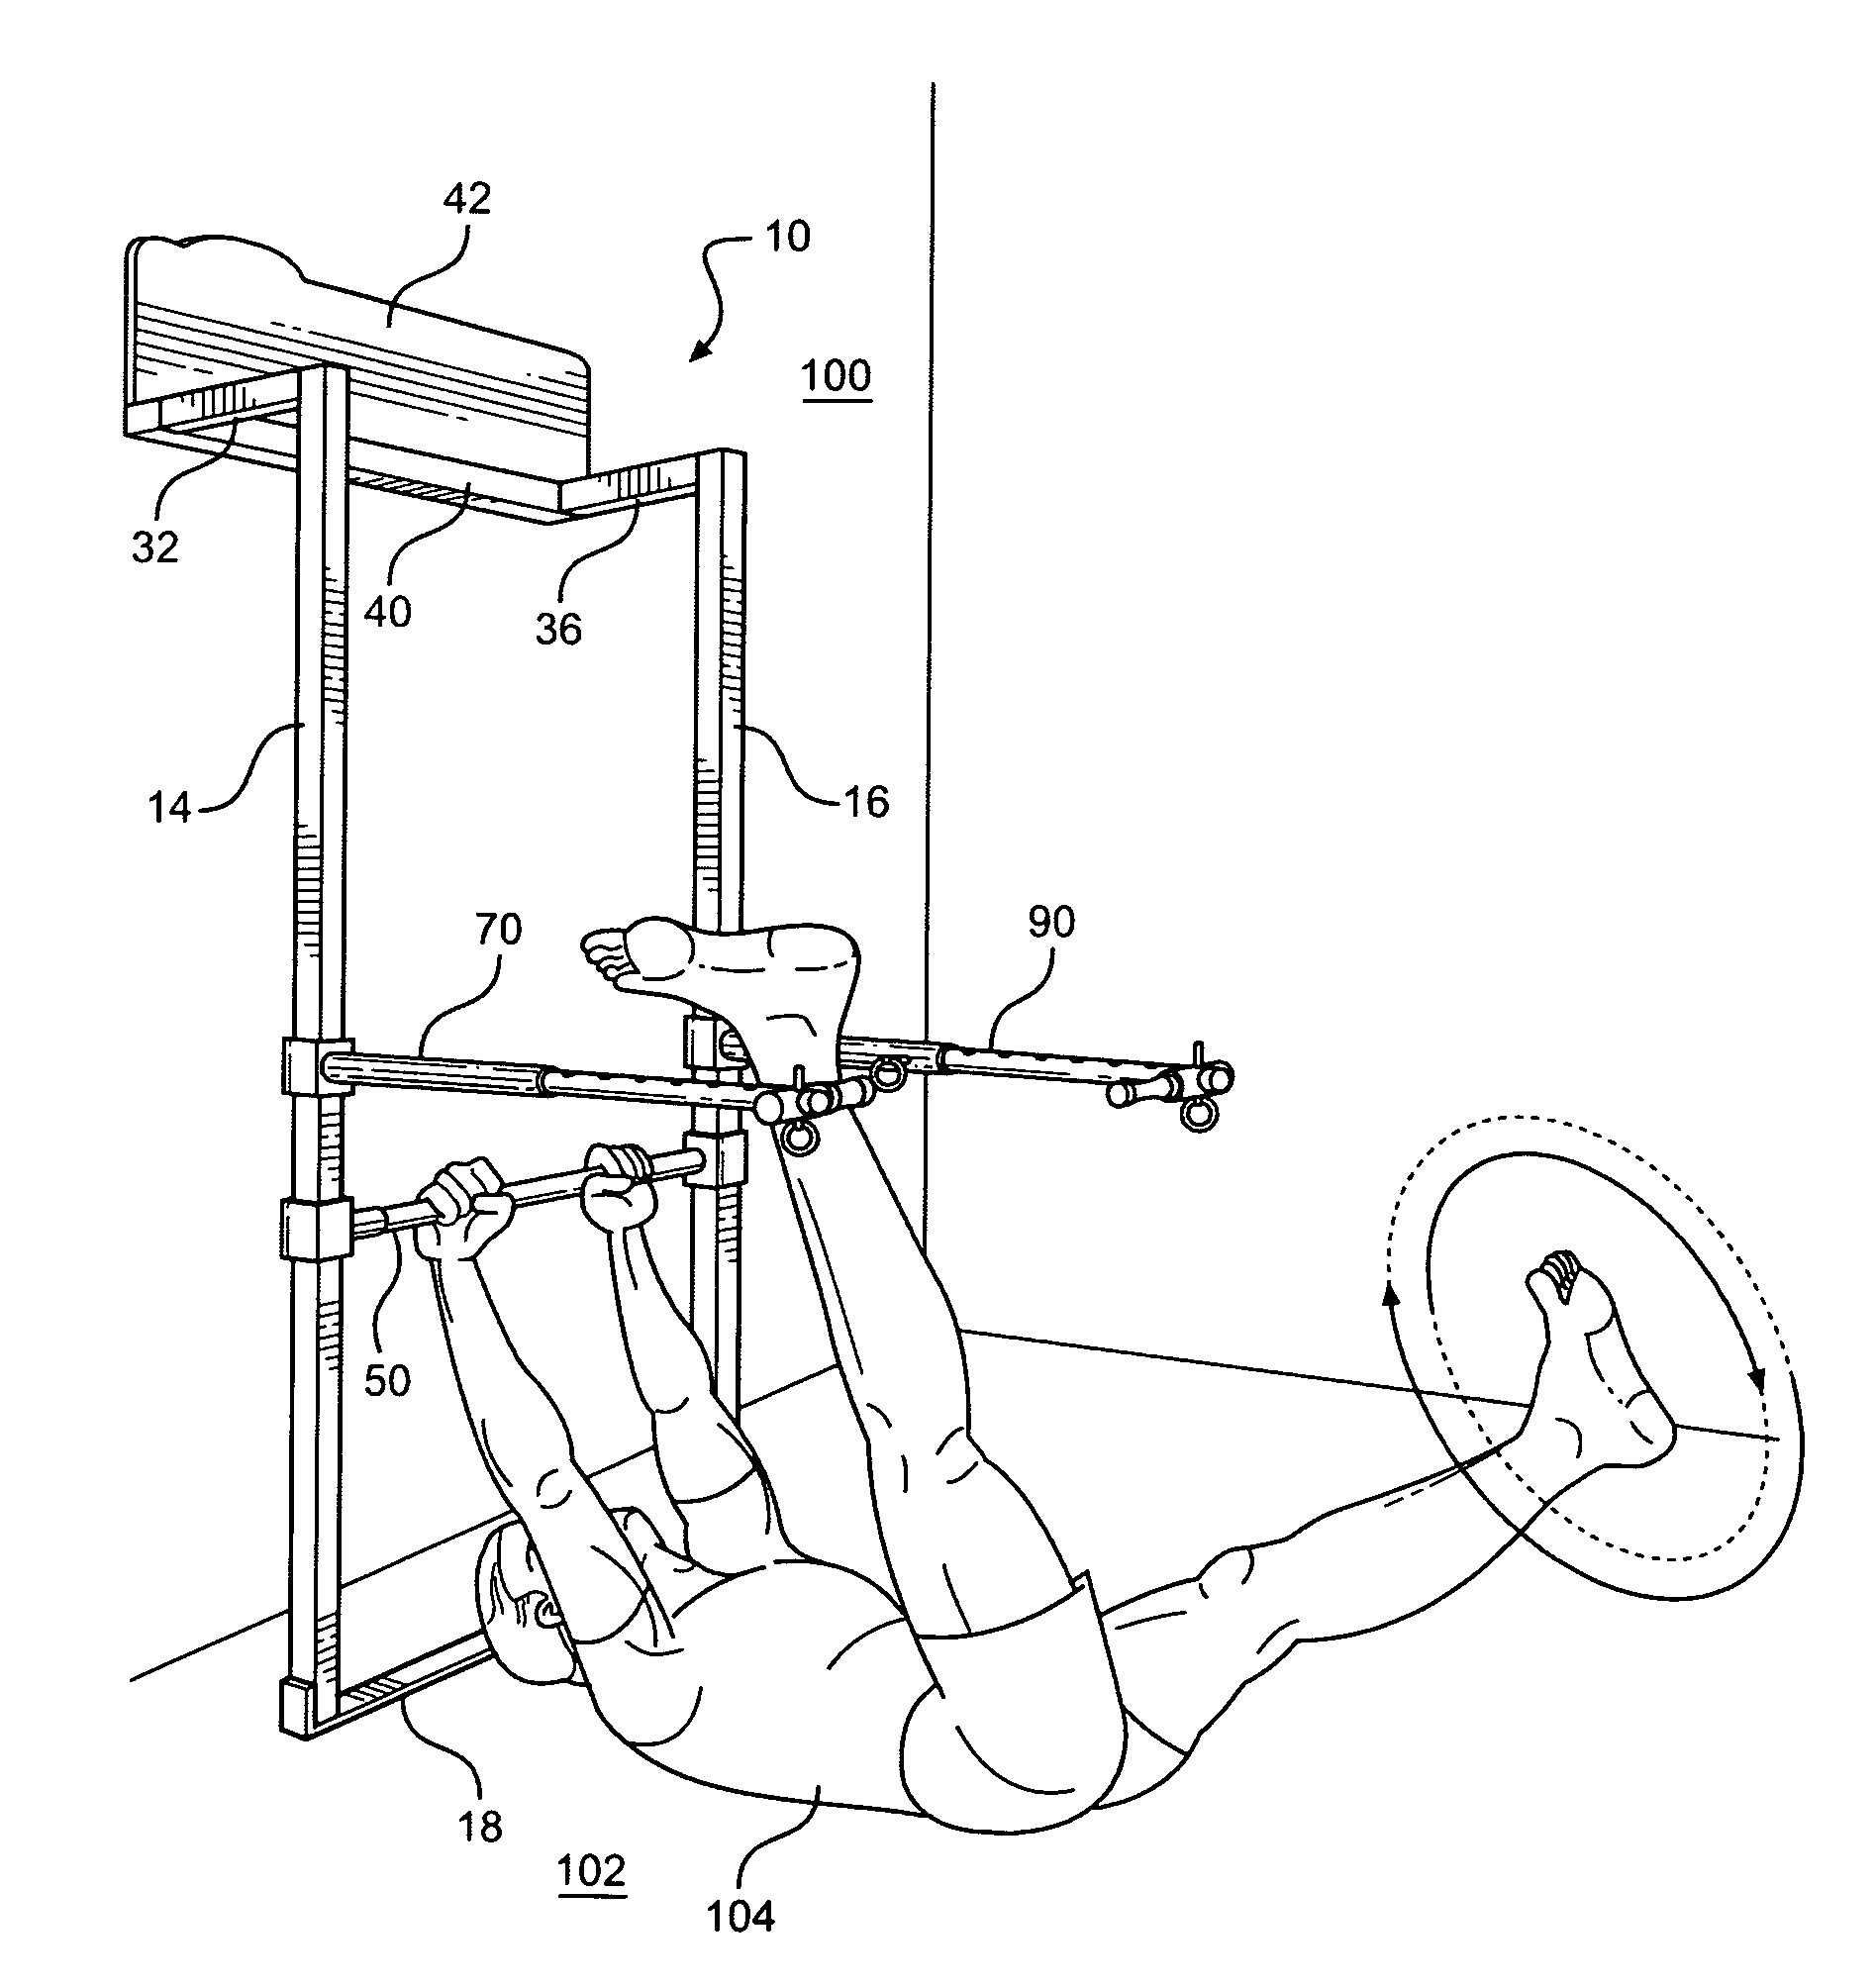 Exercise apparatus